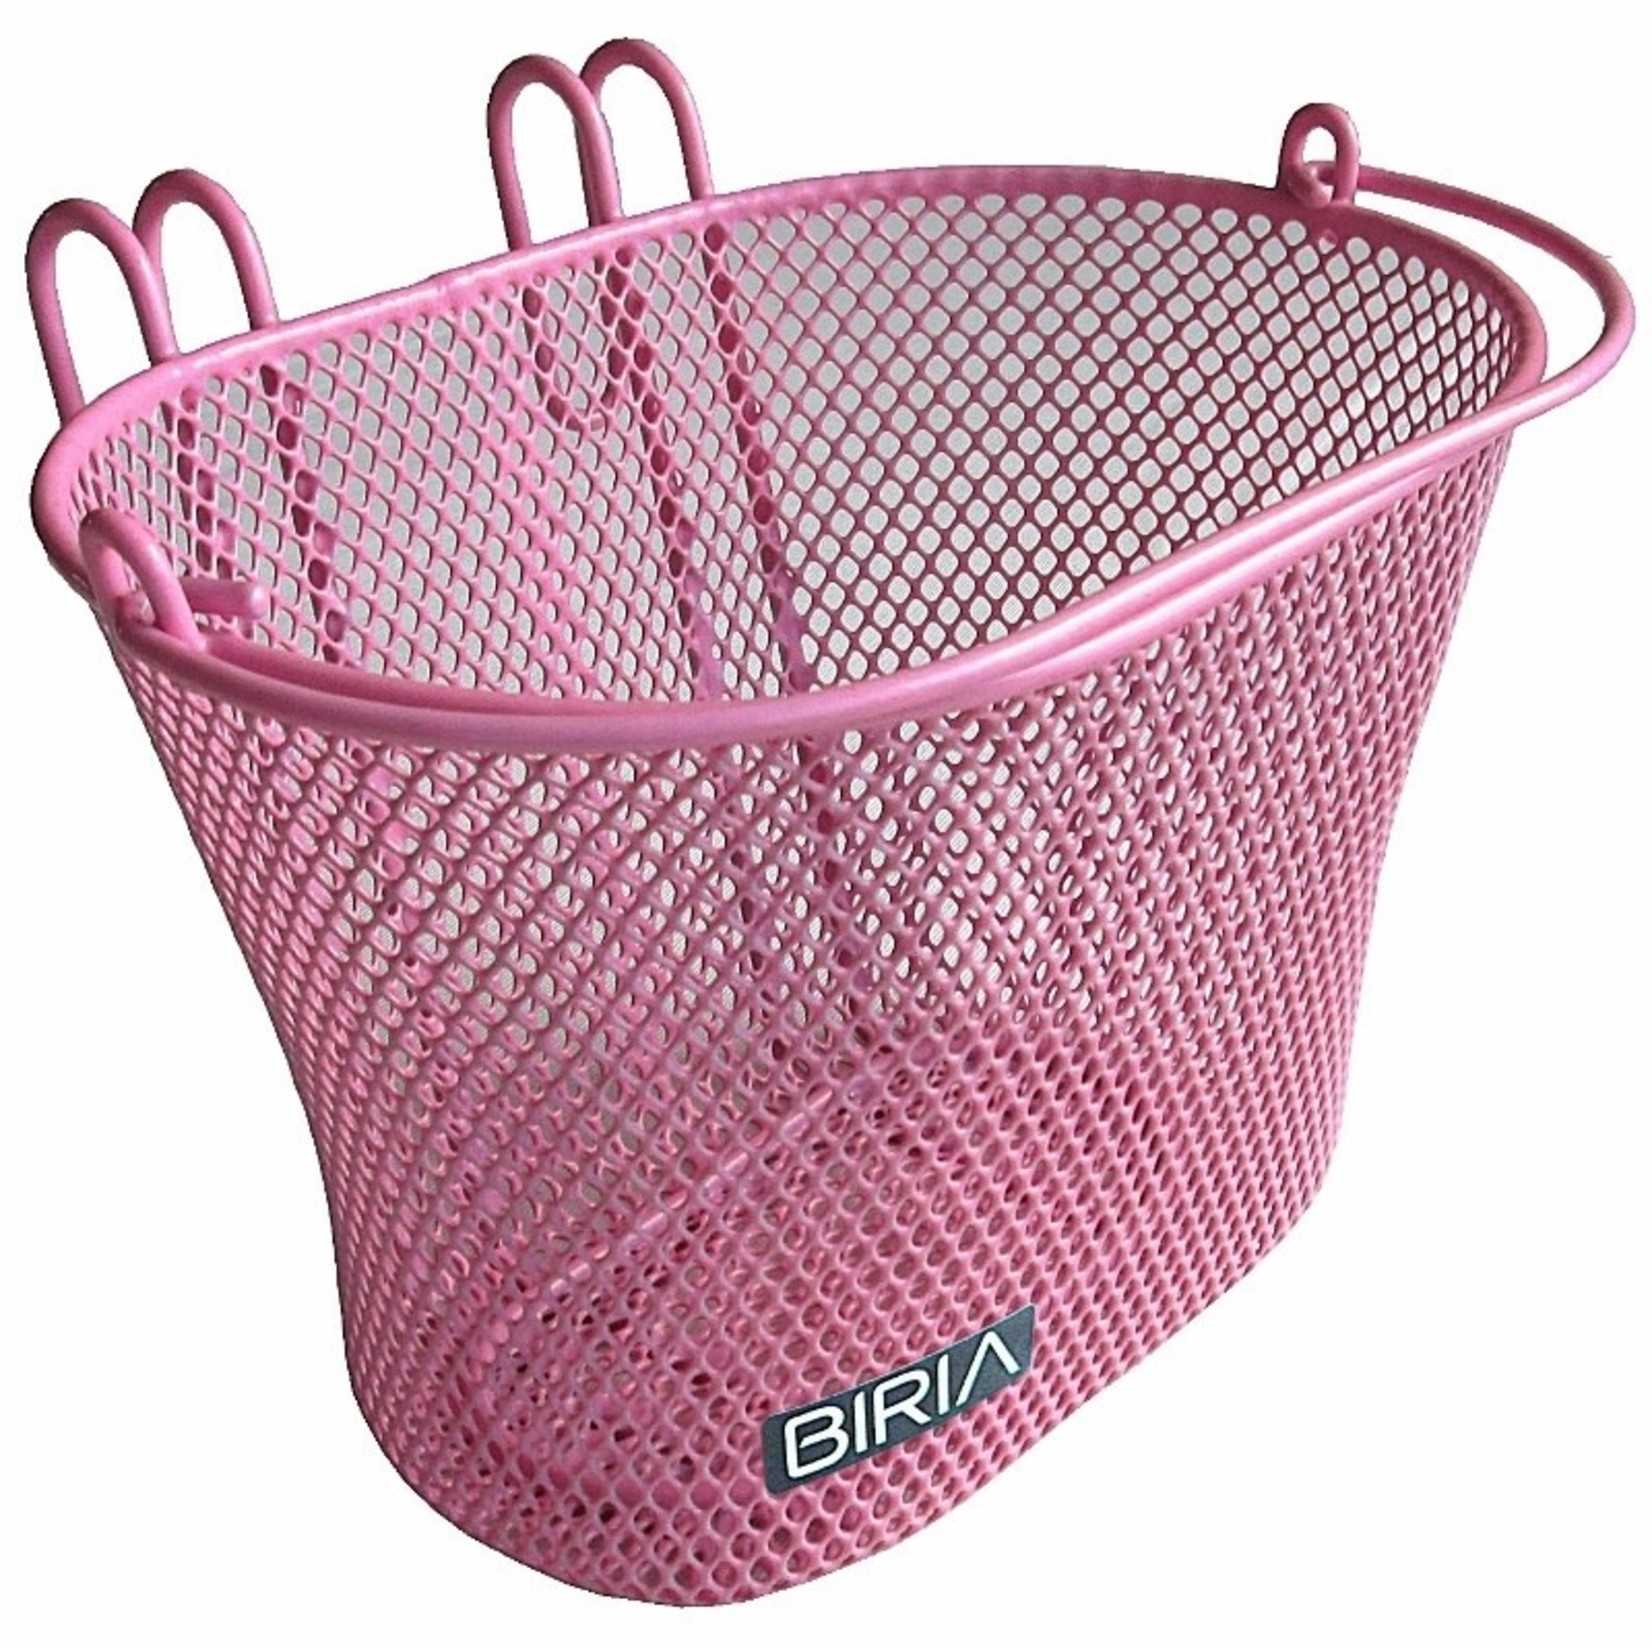 Biria Biria Children's Basket